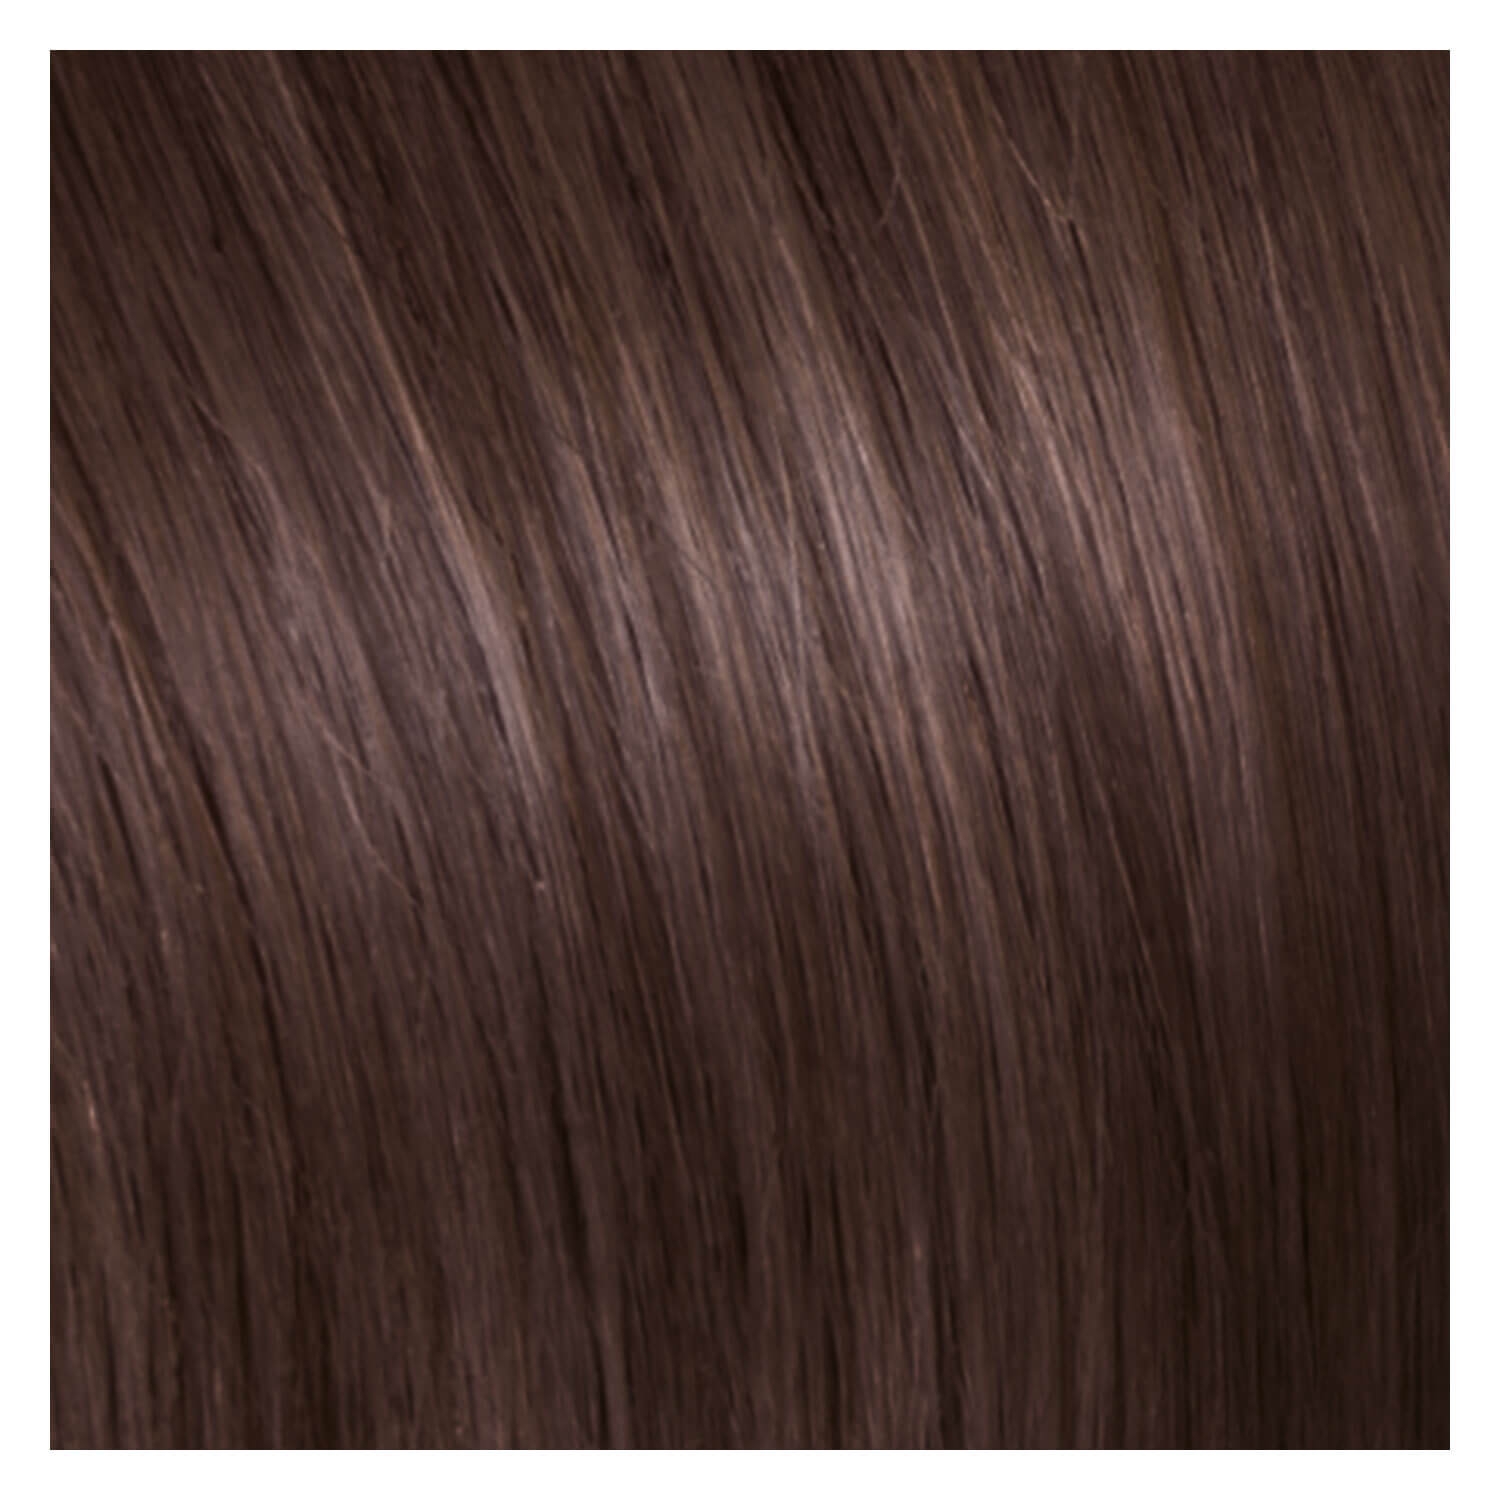 Produktbild von SHE Clip In-System Hair Extensions - 8 Dunkelblond 50/55cm